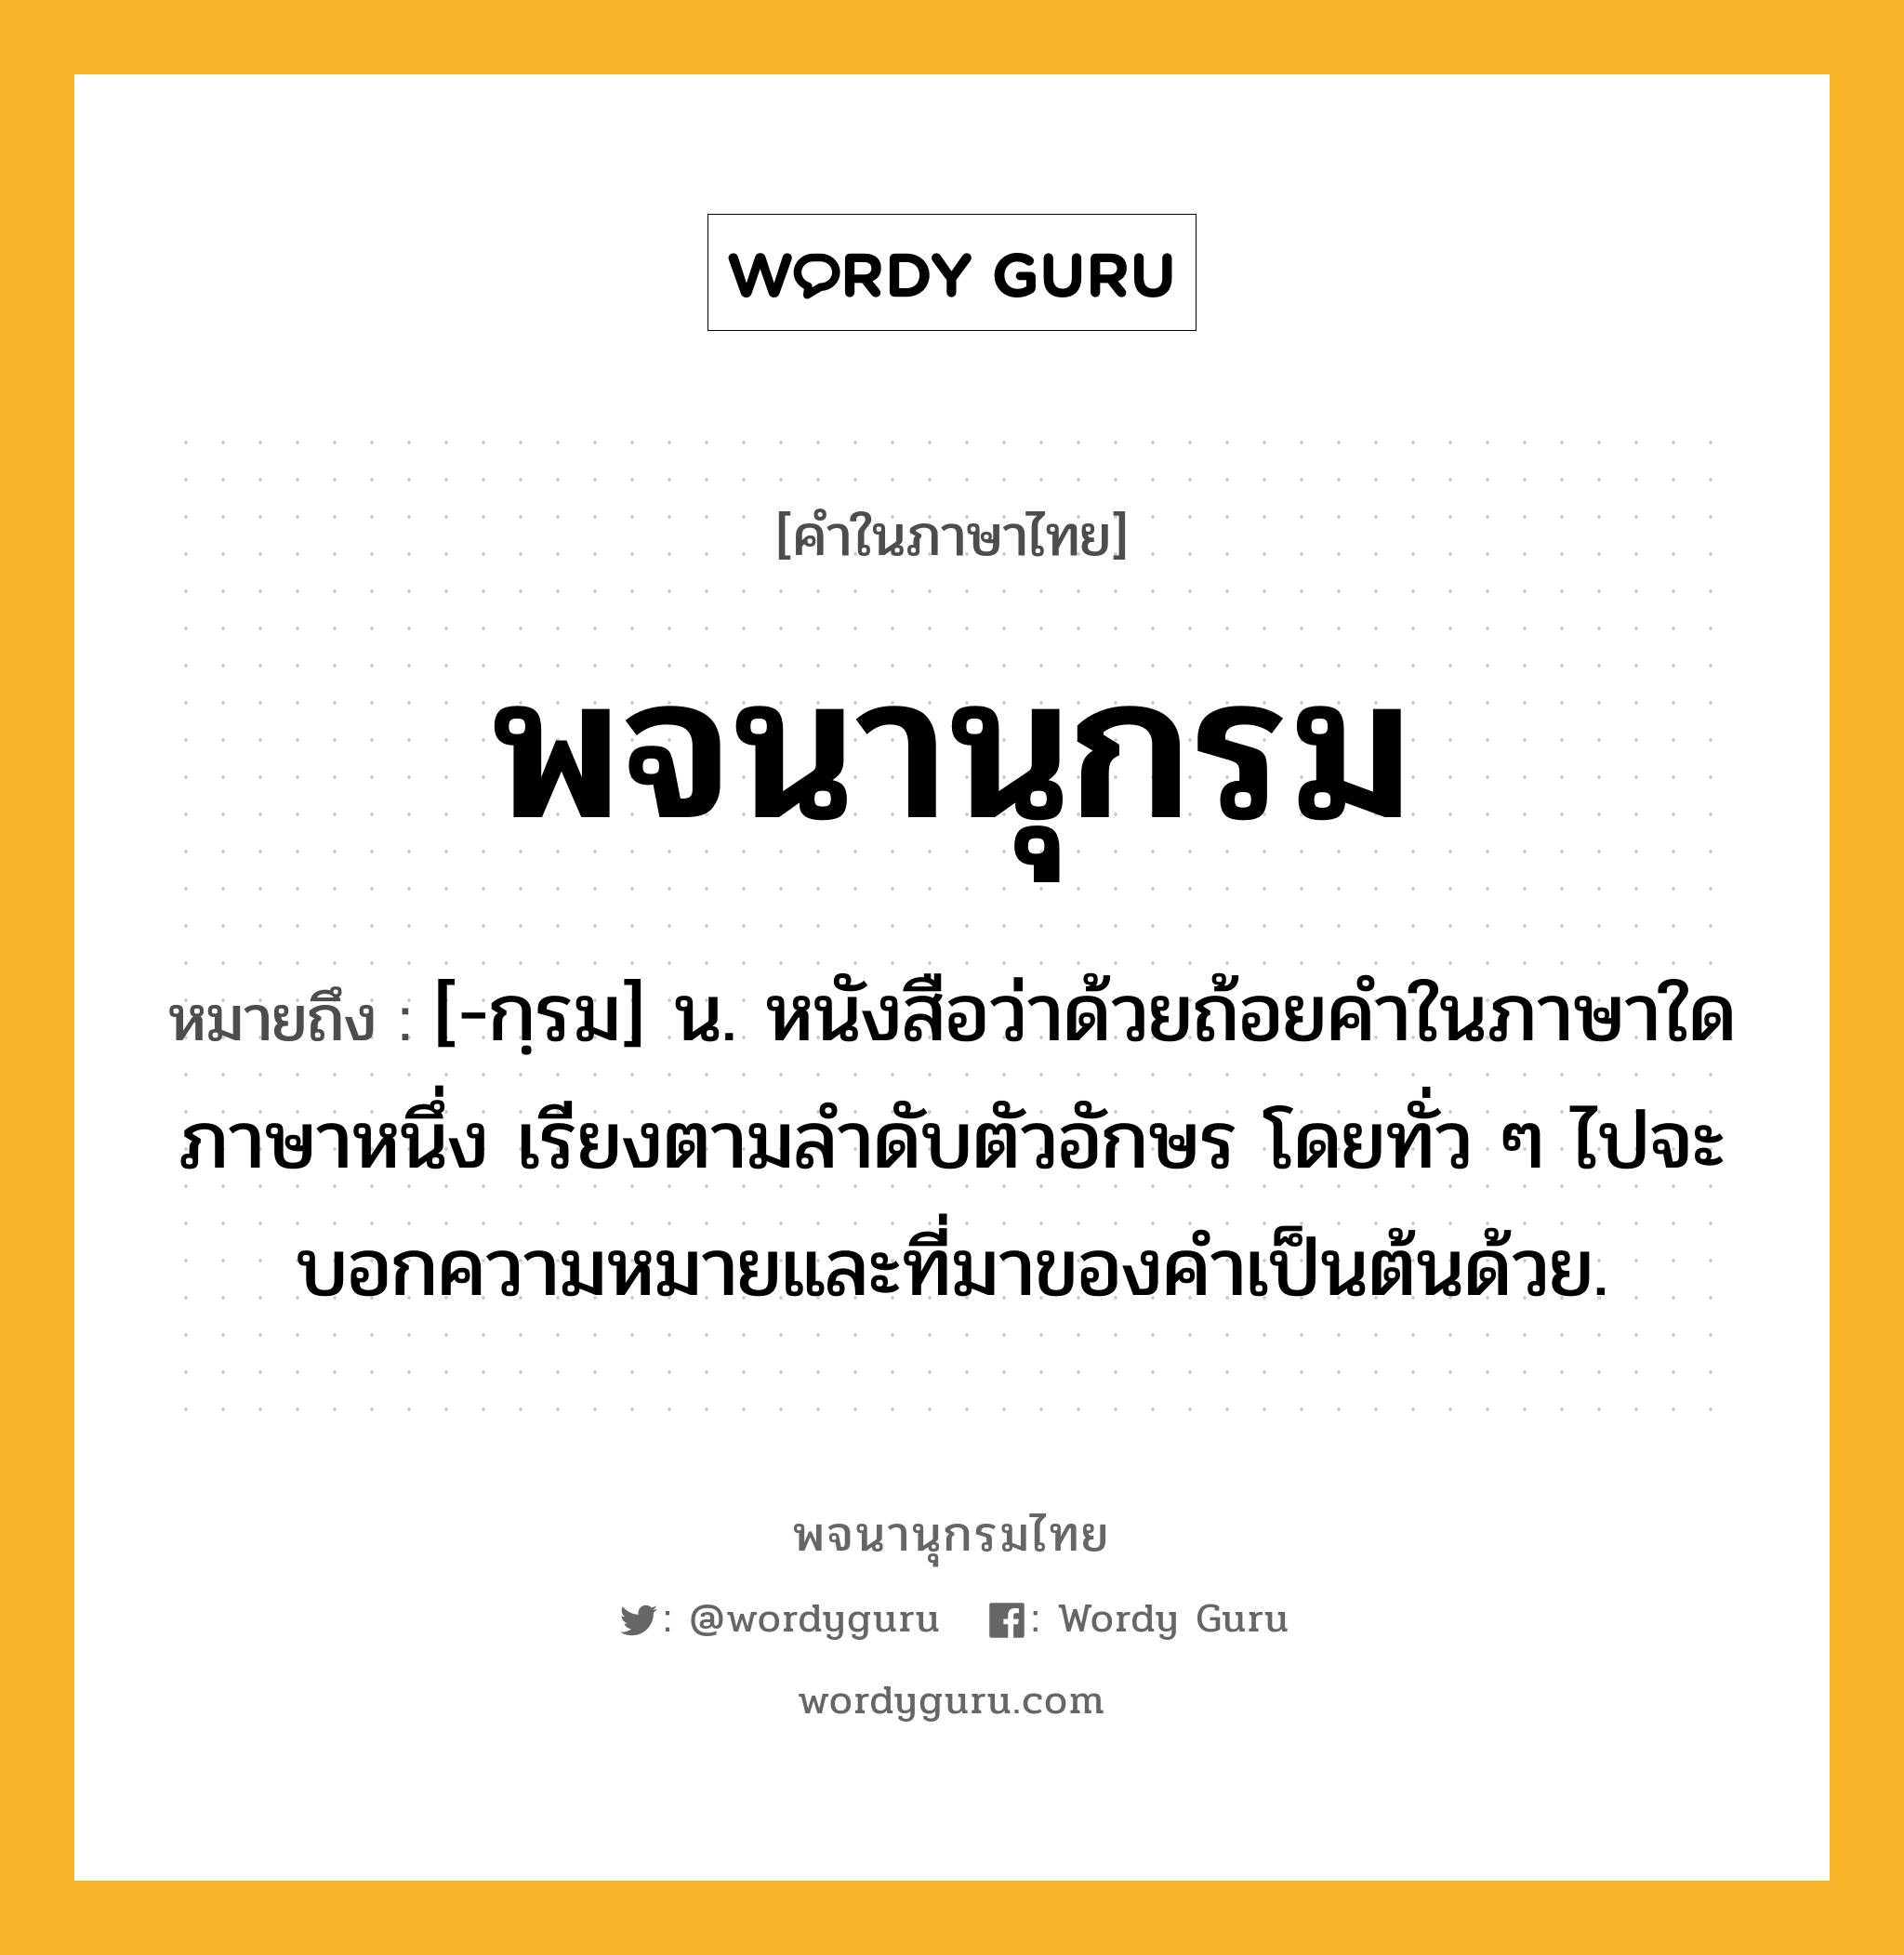 พจนานุกรม หมายถึงอะไร?, คำในภาษาไทย พจนานุกรม หมายถึง [-กฺรม] น. หนังสือว่าด้วยถ้อยคำในภาษาใดภาษาหนึ่ง เรียงตามลำดับตัวอักษร โดยทั่ว ๆ ไปจะบอกความหมายและที่มาของคำเป็นต้นด้วย.